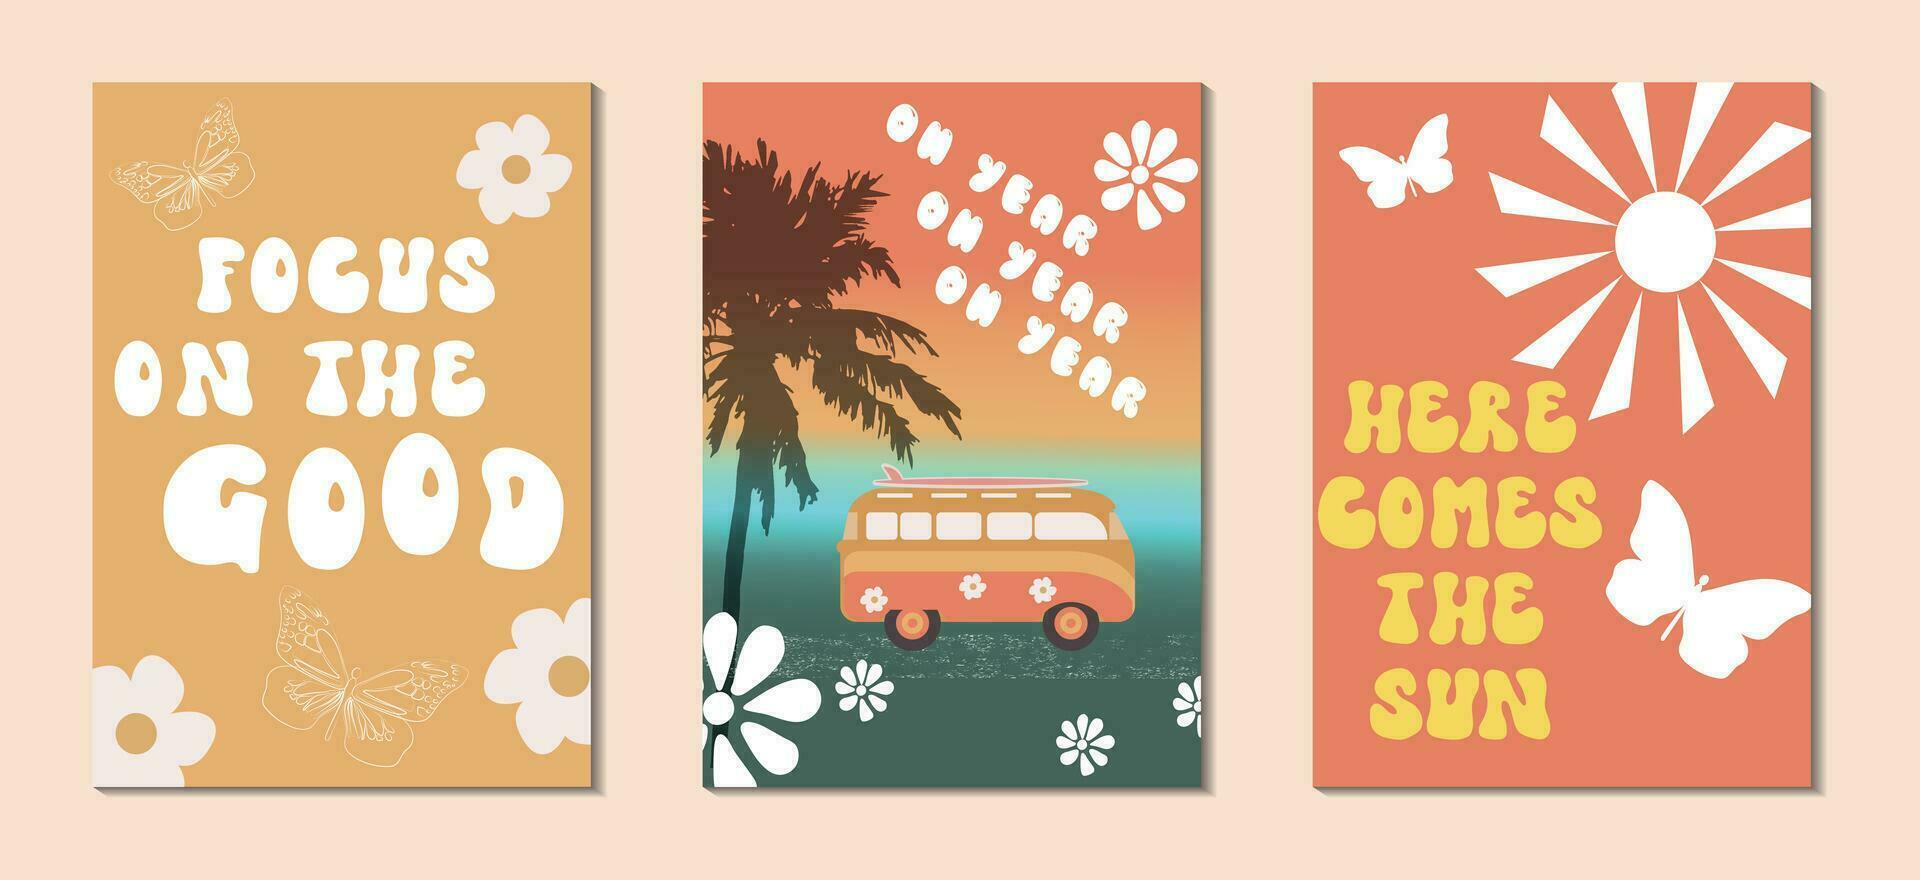 groovy jaren 70 achtergronden . hippie stijlvol. posters in de stijl van jaren 70 retro groovy met belettering, vlinders, zon , handpalmen, bloemen, auto, structuur enz..vector illustratie vector